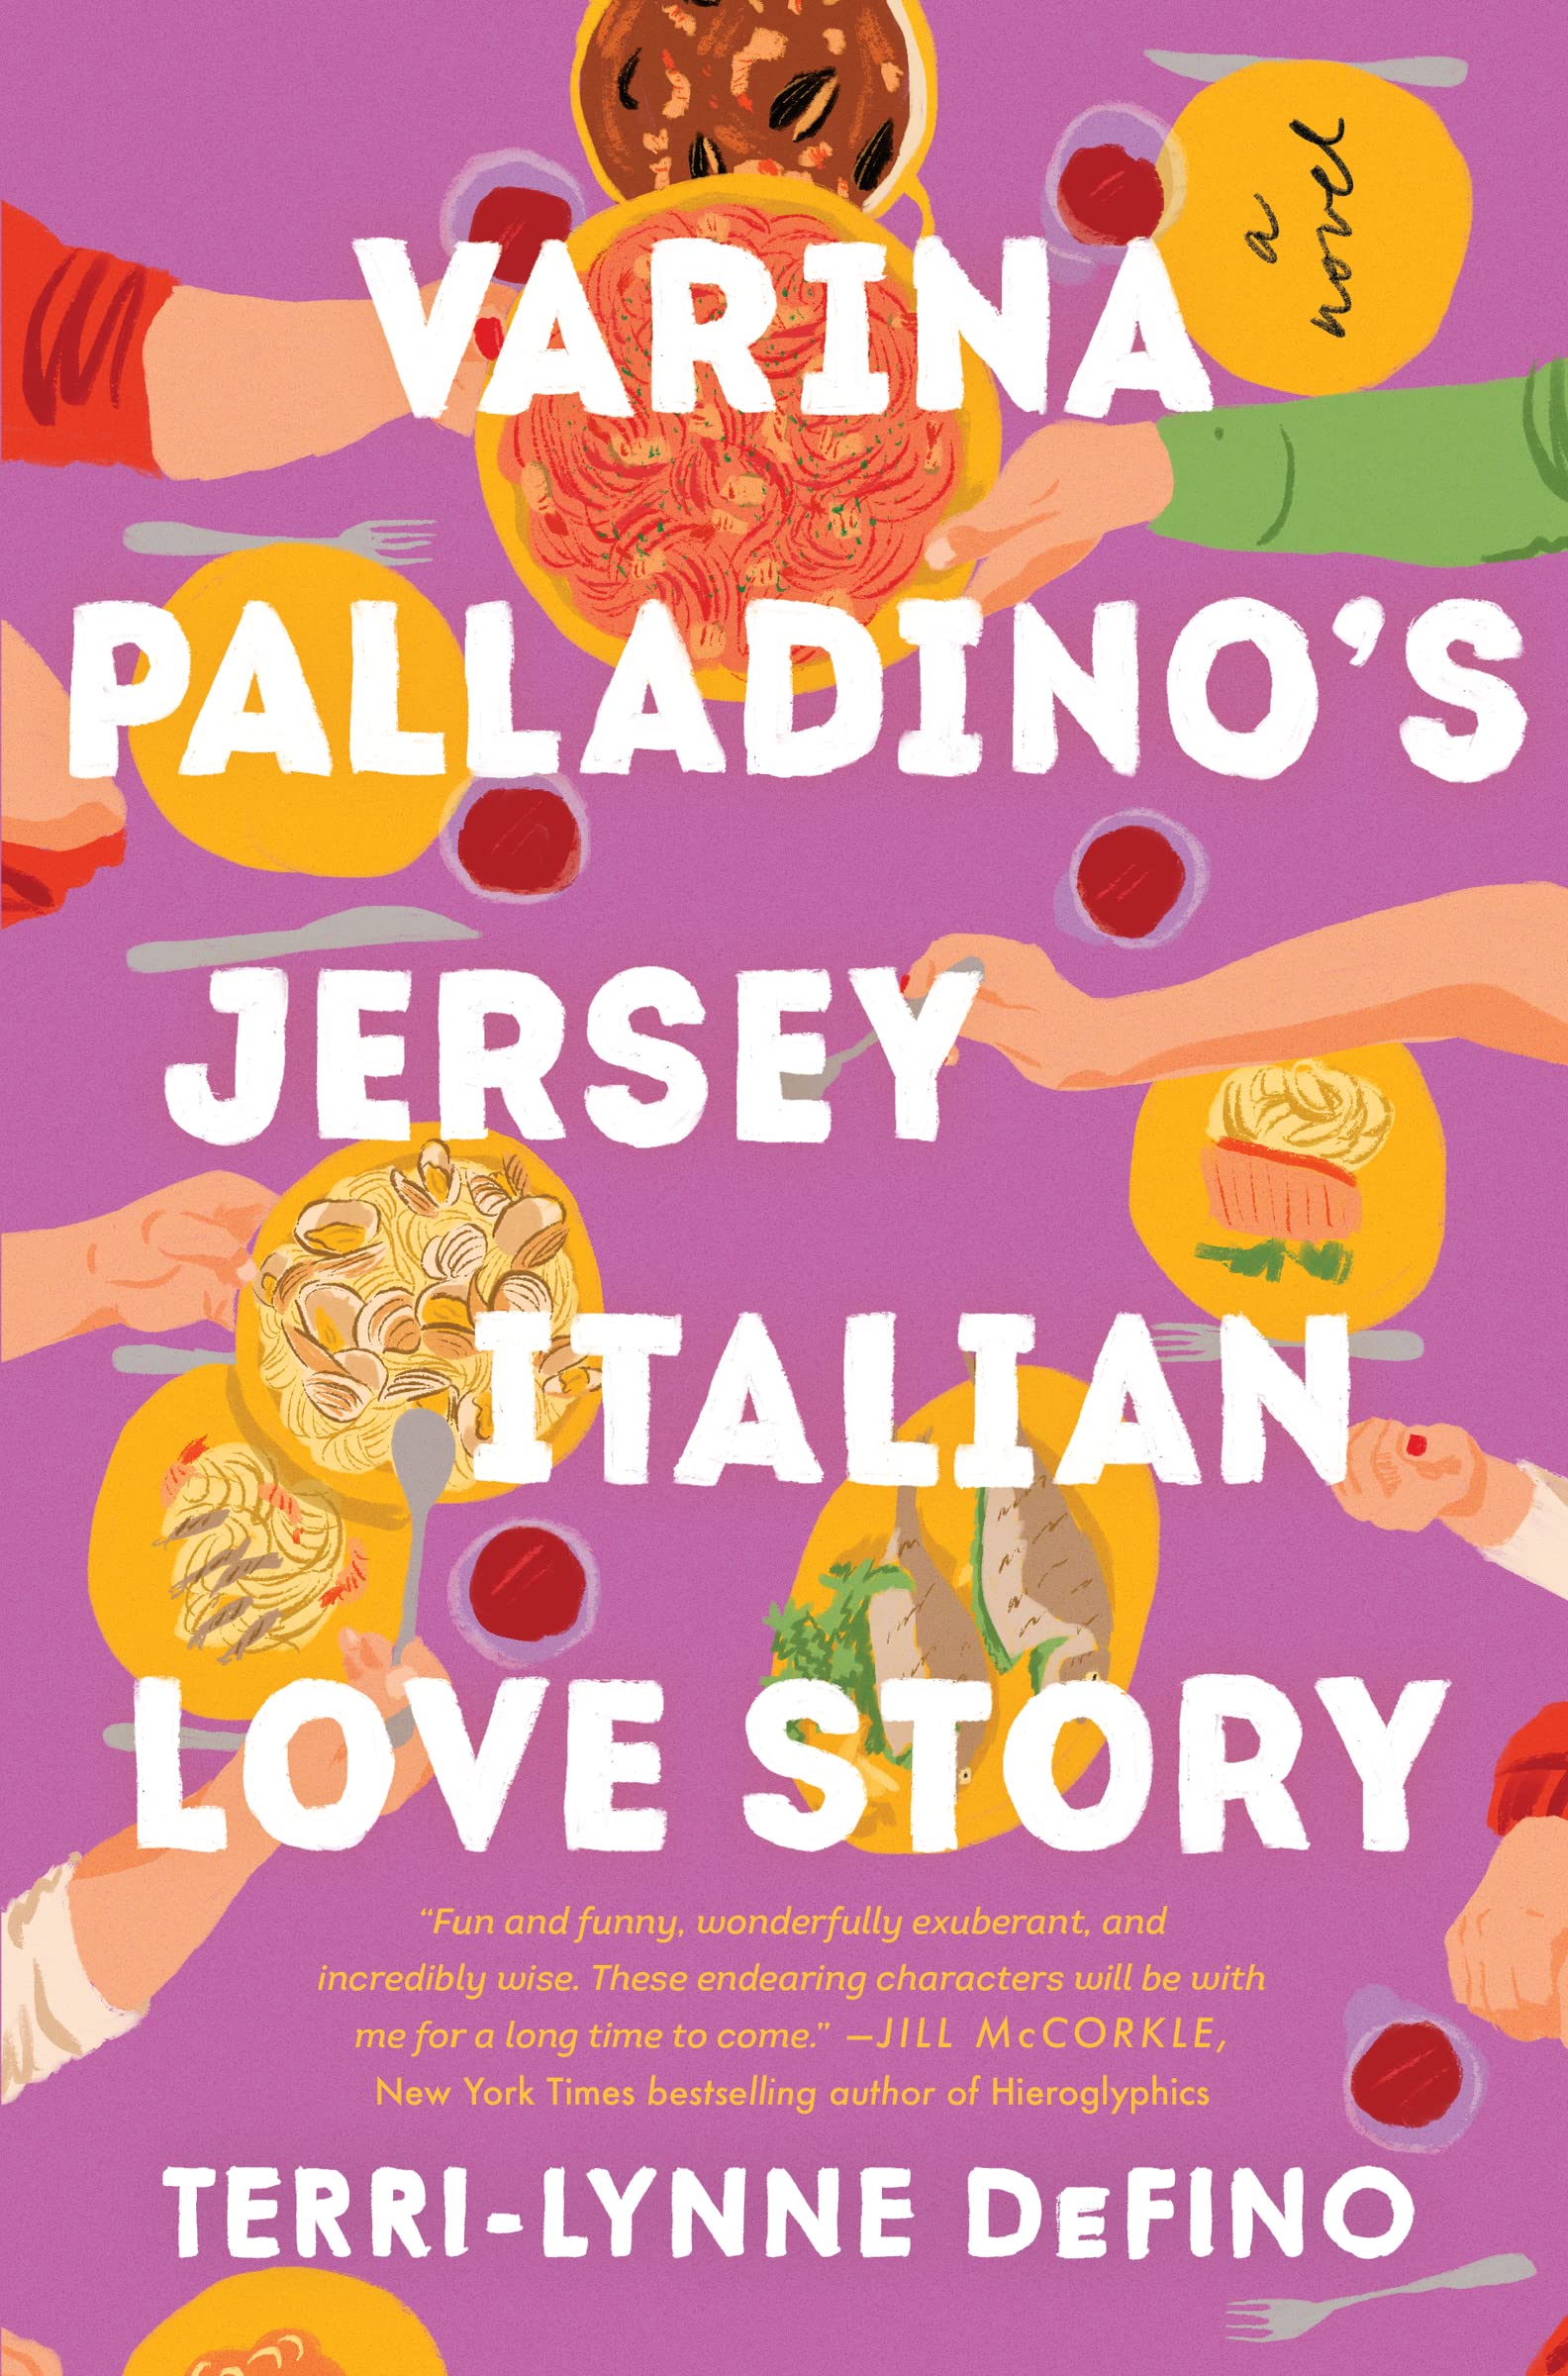 Image for "Varina Palladino's Jersey Italian Love Story"